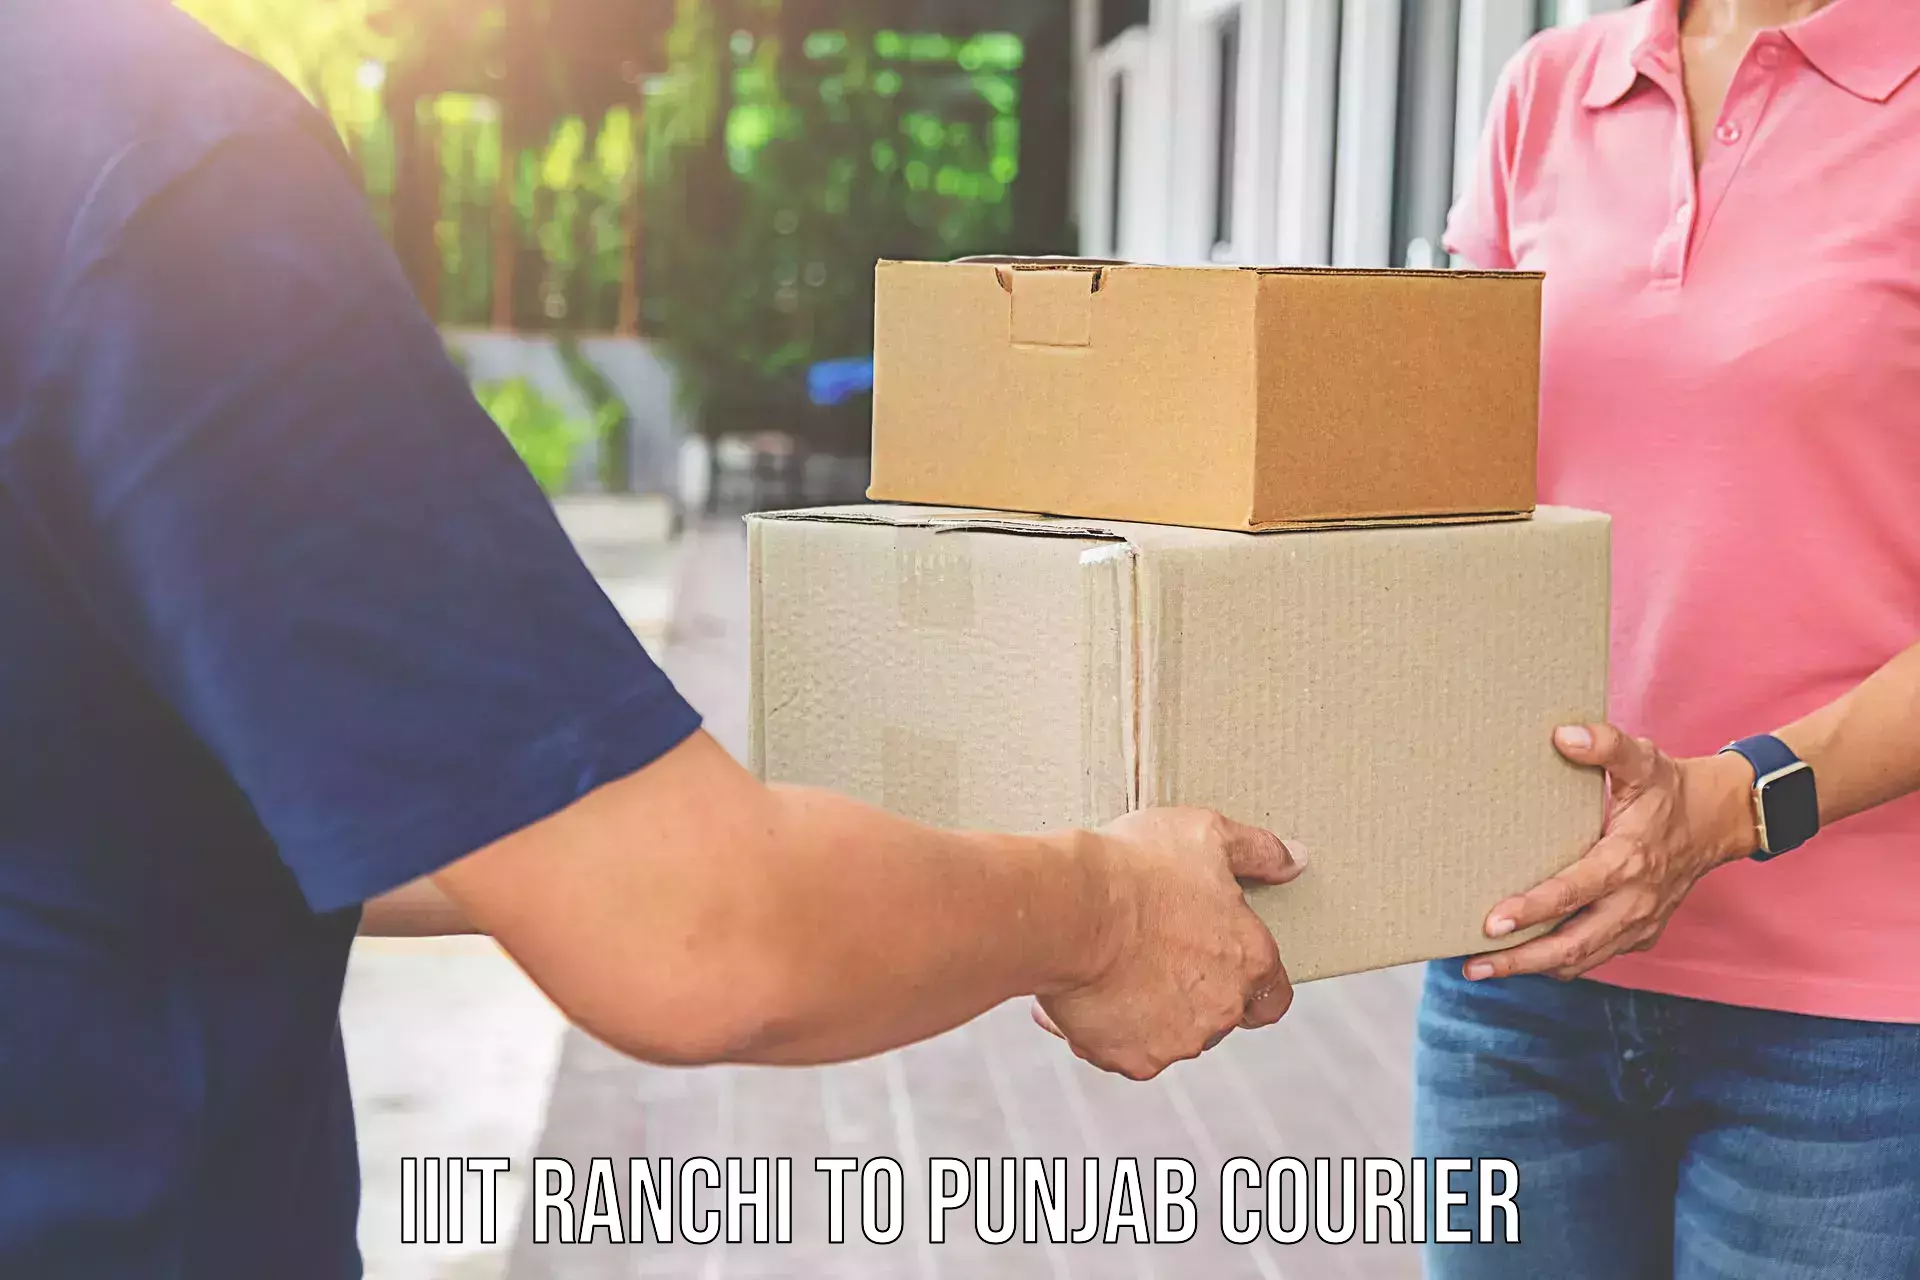 Furniture transport and storage IIIT Ranchi to Punjab